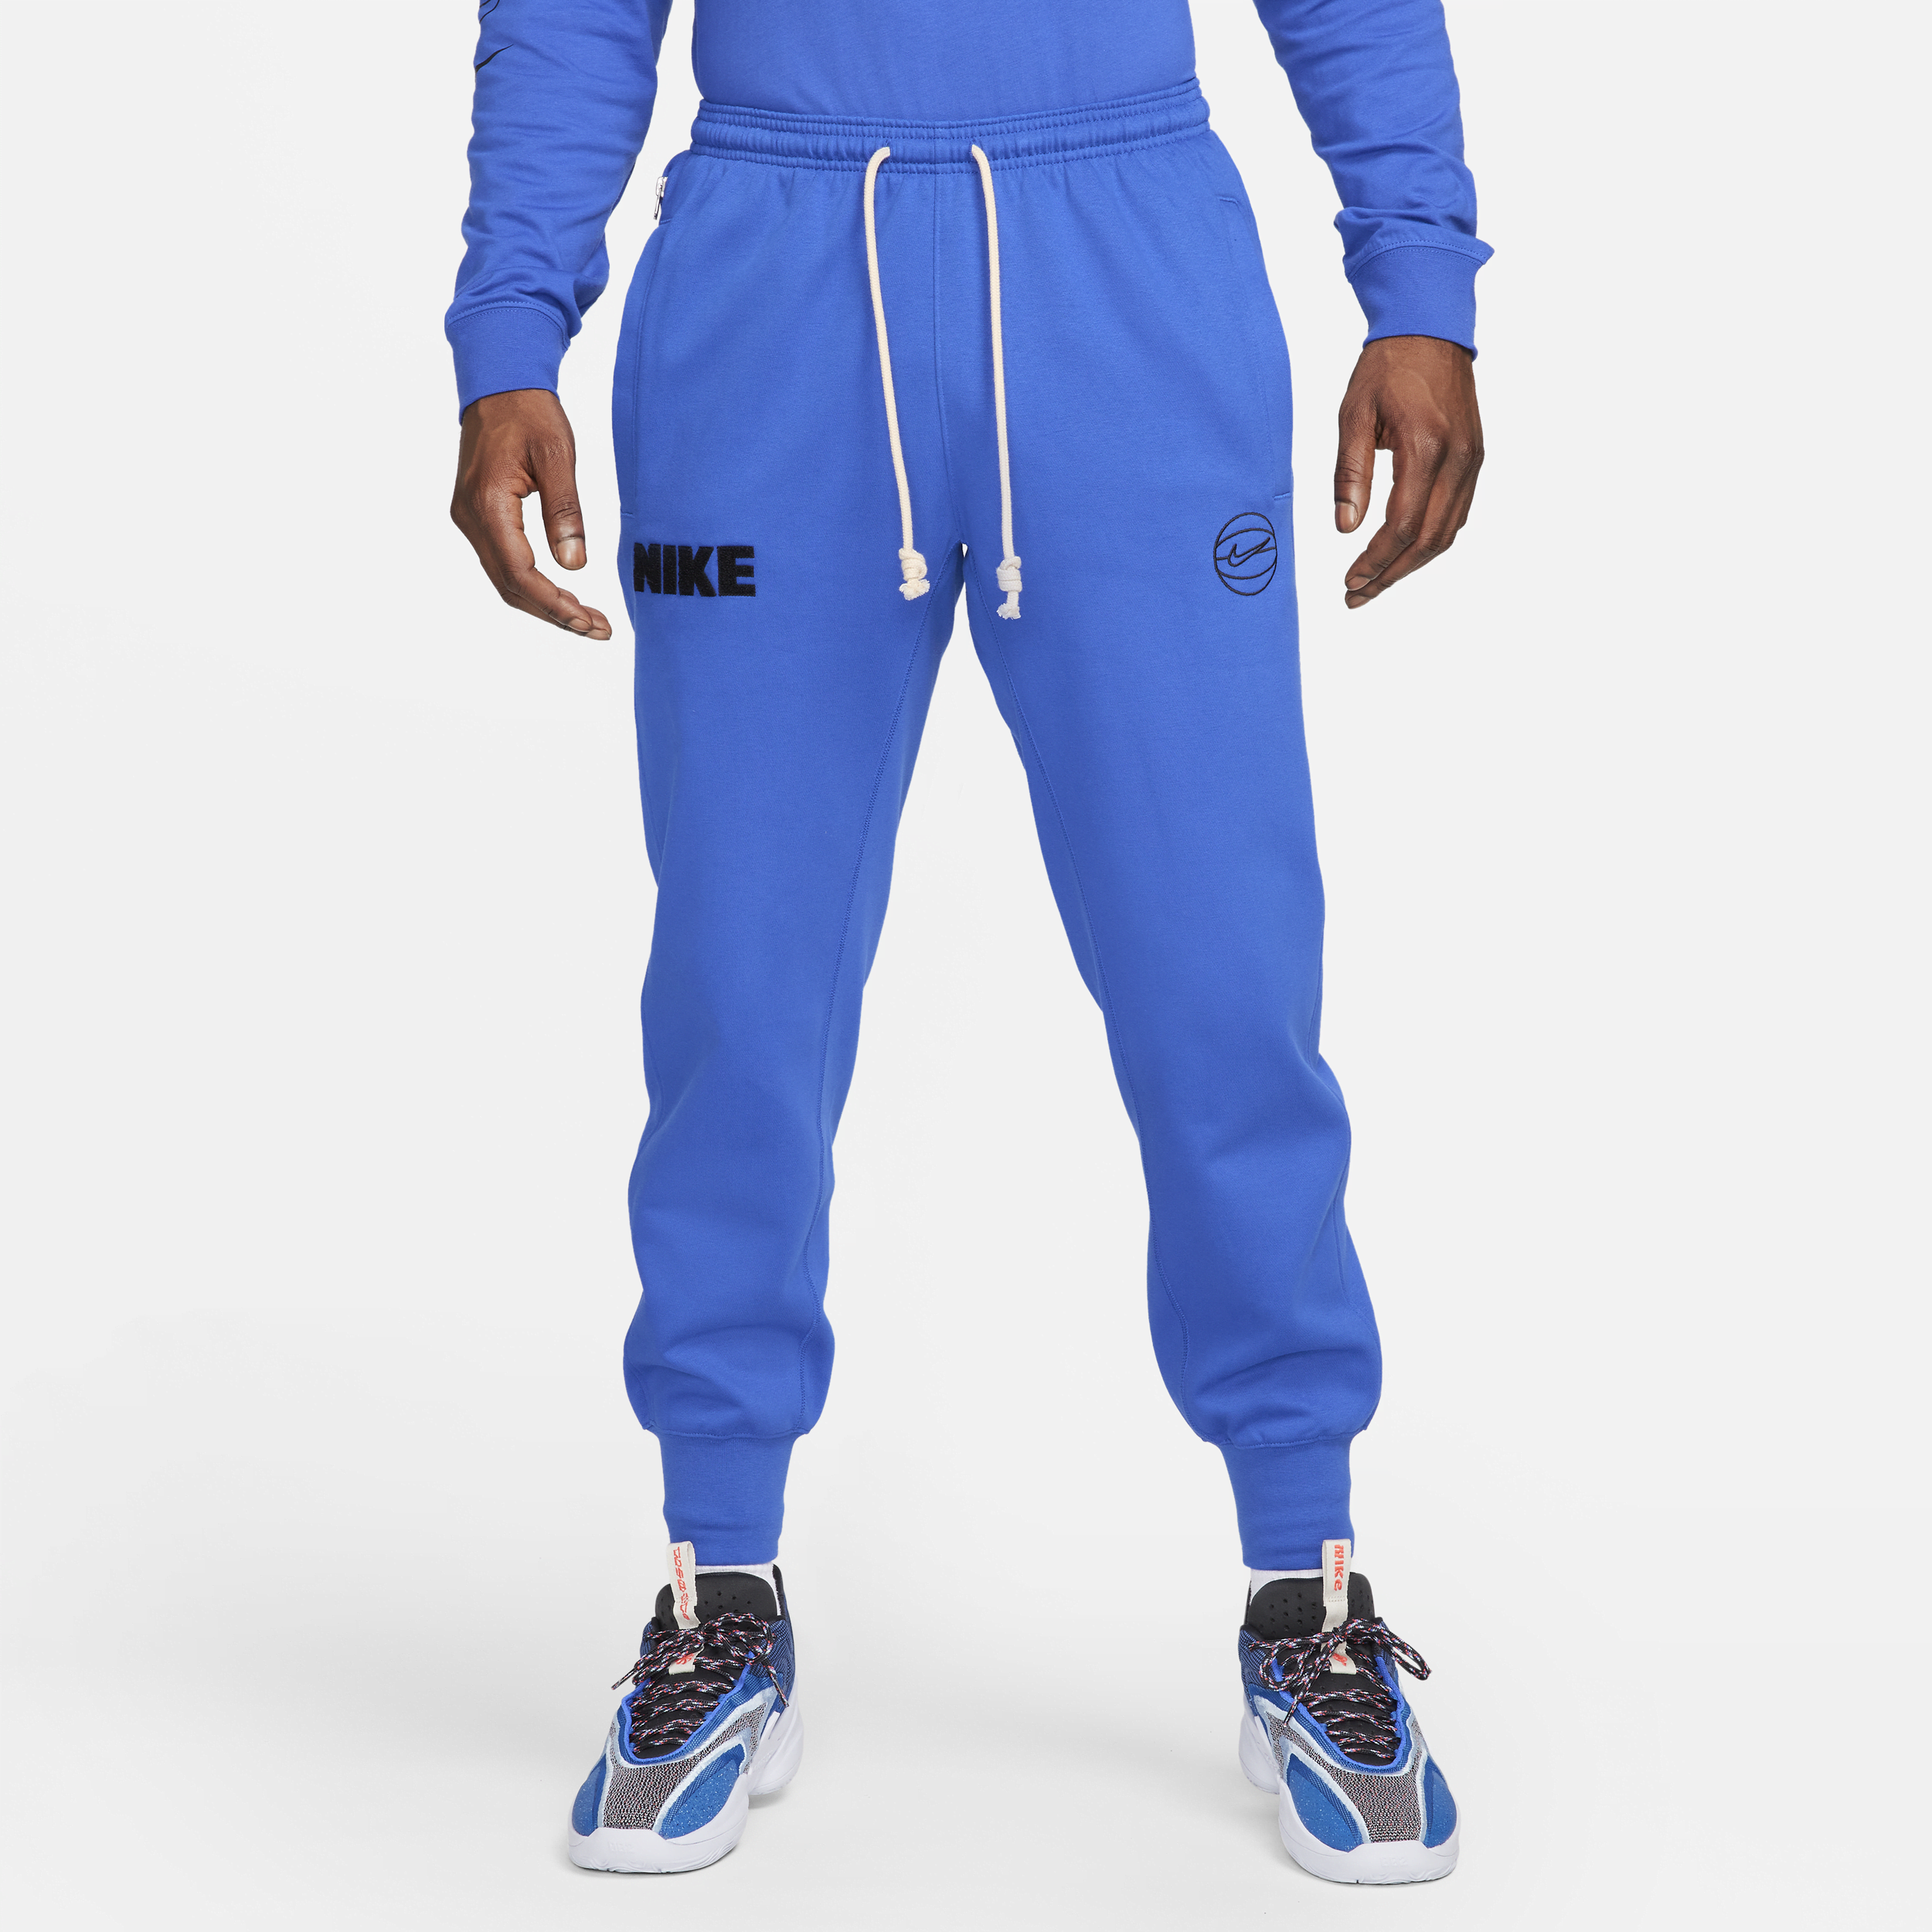 Nike Dri-FIT Standard Issue-basketballbukser med opslag til mænd - blå